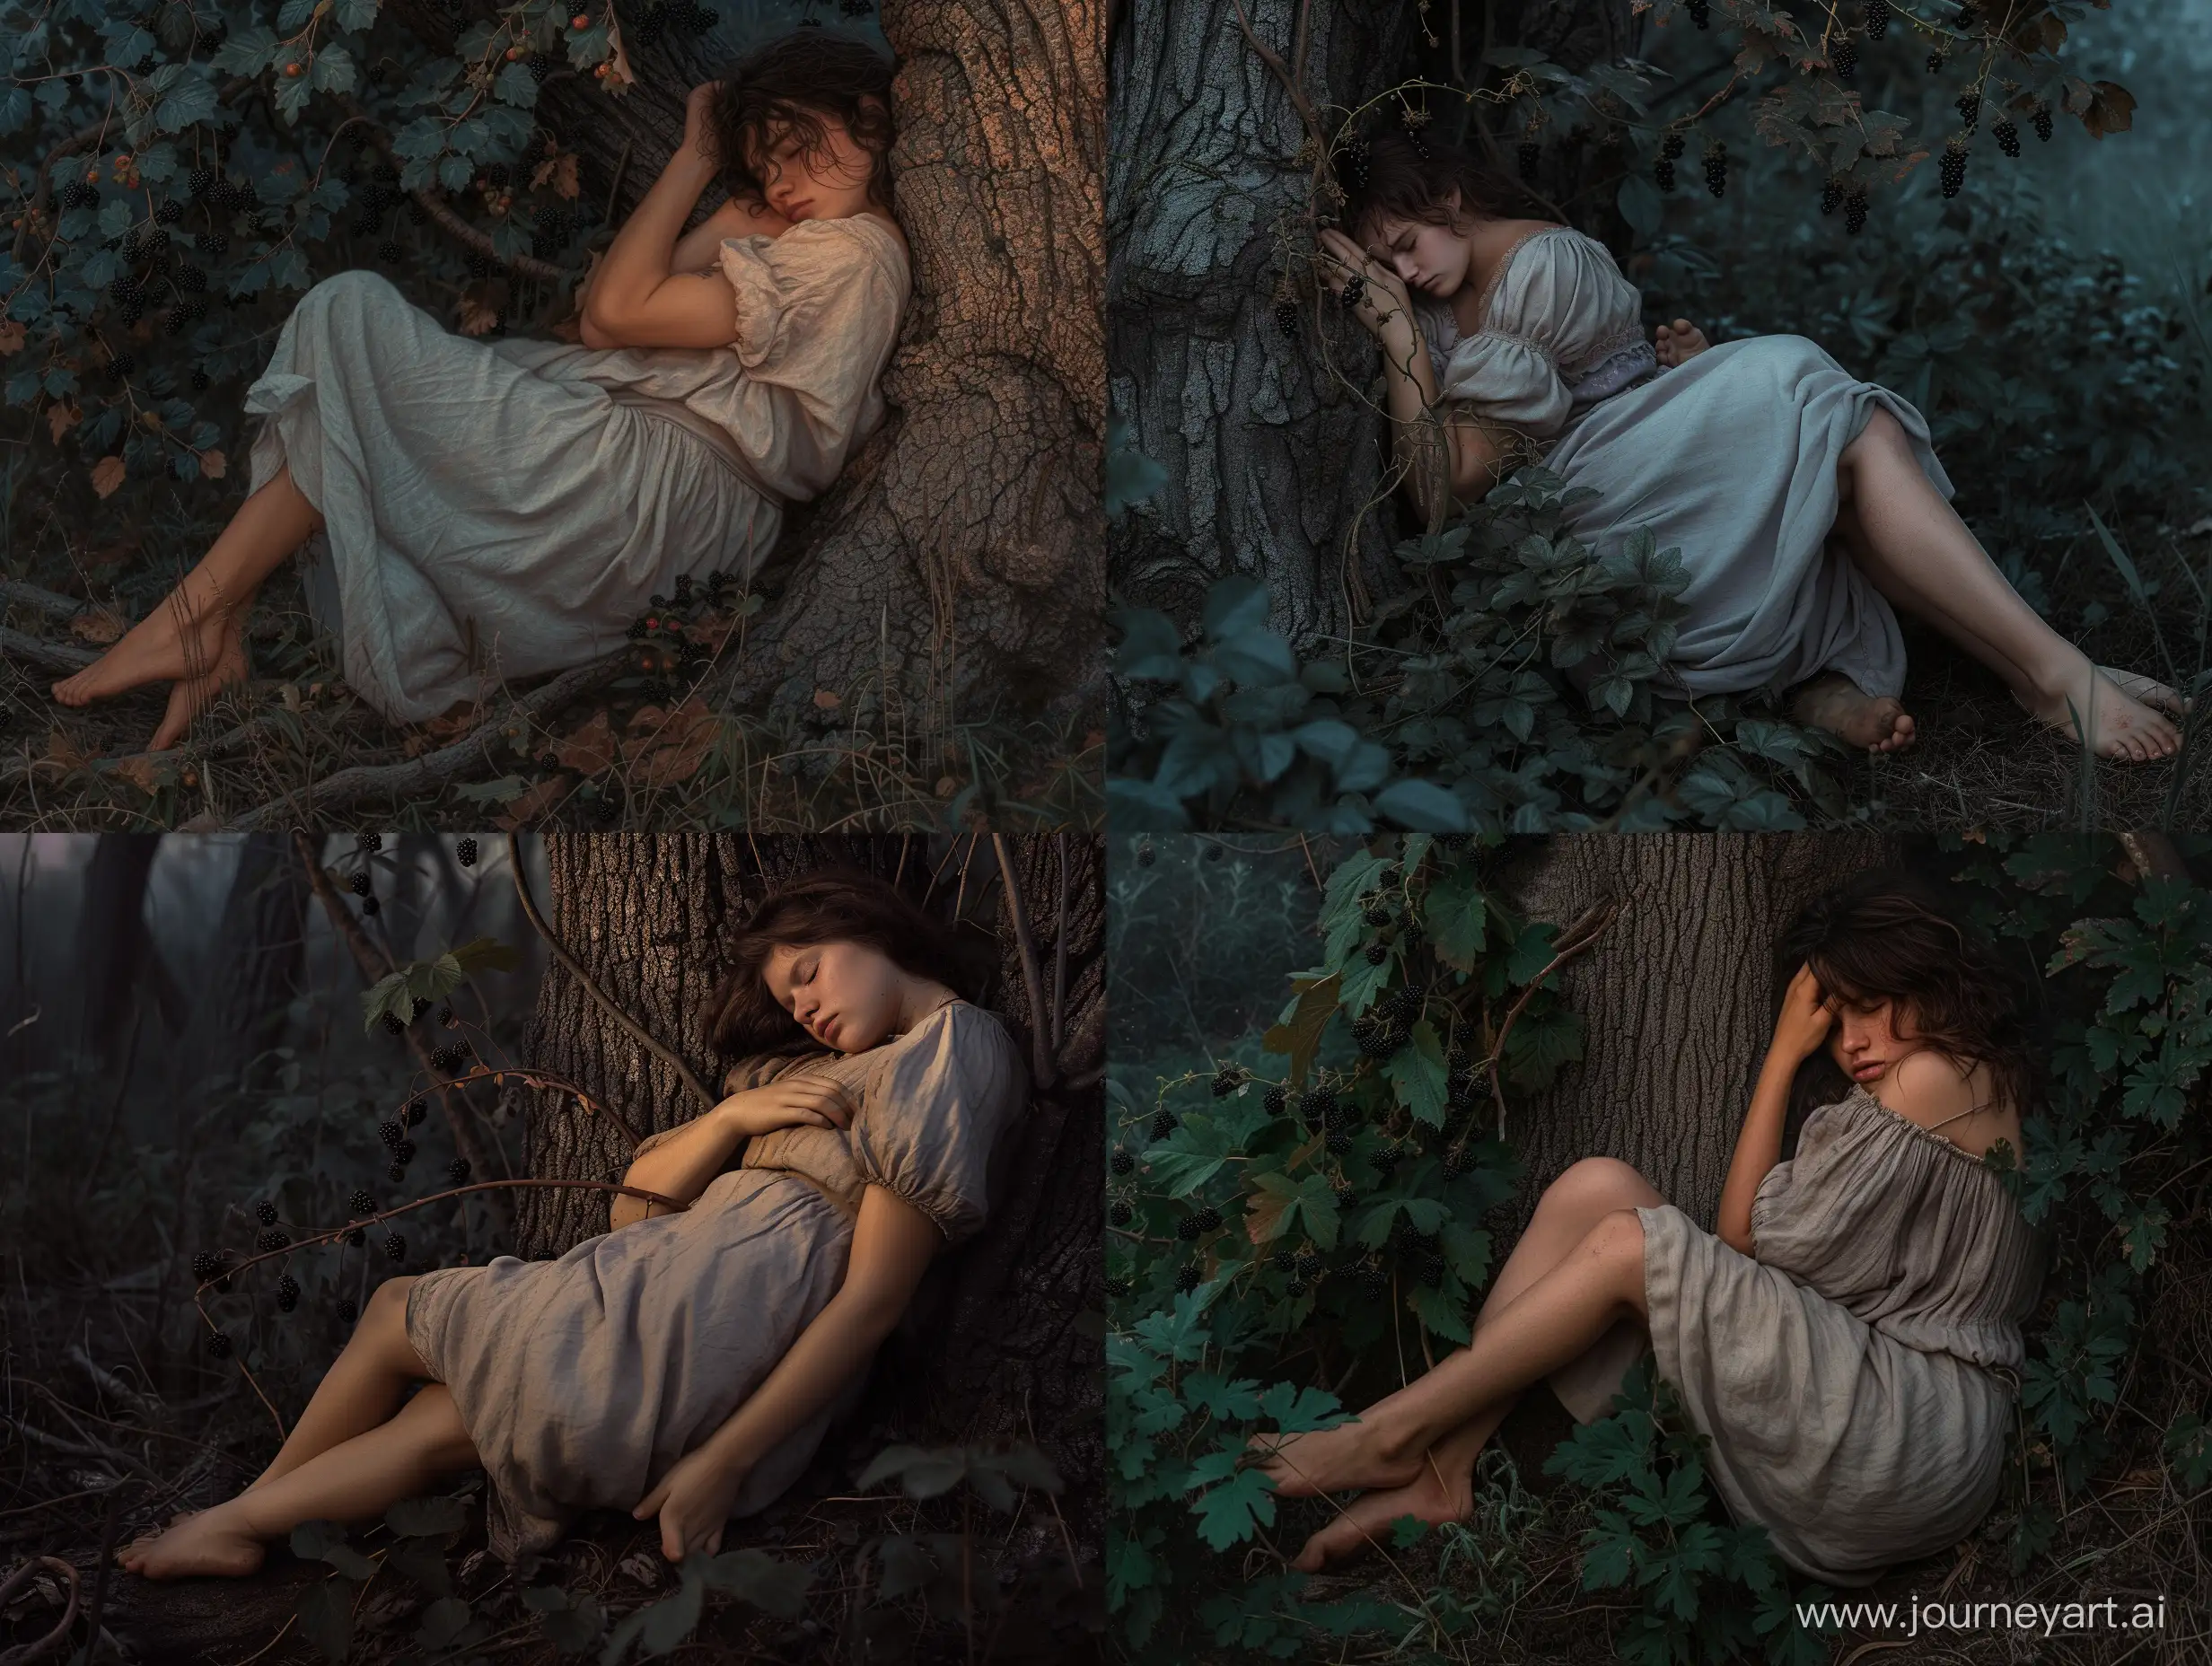 Frau, schlafend mit dem Rücken an einen Baumstamm gelehnt im Wald, Zwielicht im Morgengrauen. Es gibt Brombeerranken im Unterholz. Sie trägt schlichte Kleidung und hat nackte Füße und dunkelbraue Haare. Die Athmosphäre ist düster. Fotorealistisch.